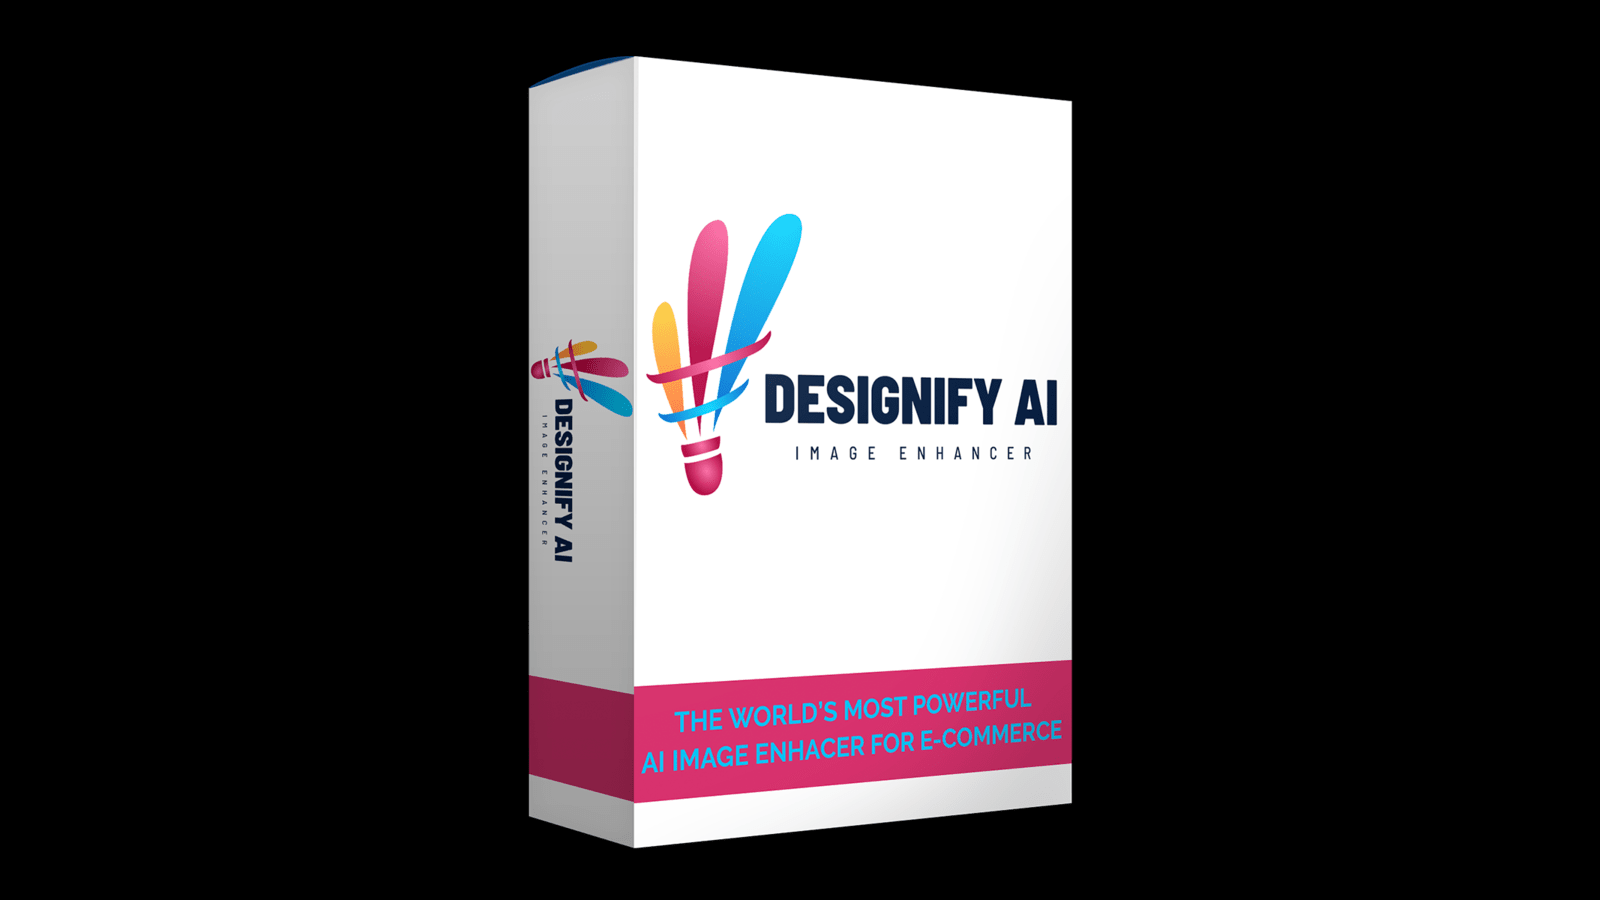 Designify AI Image Enhancer